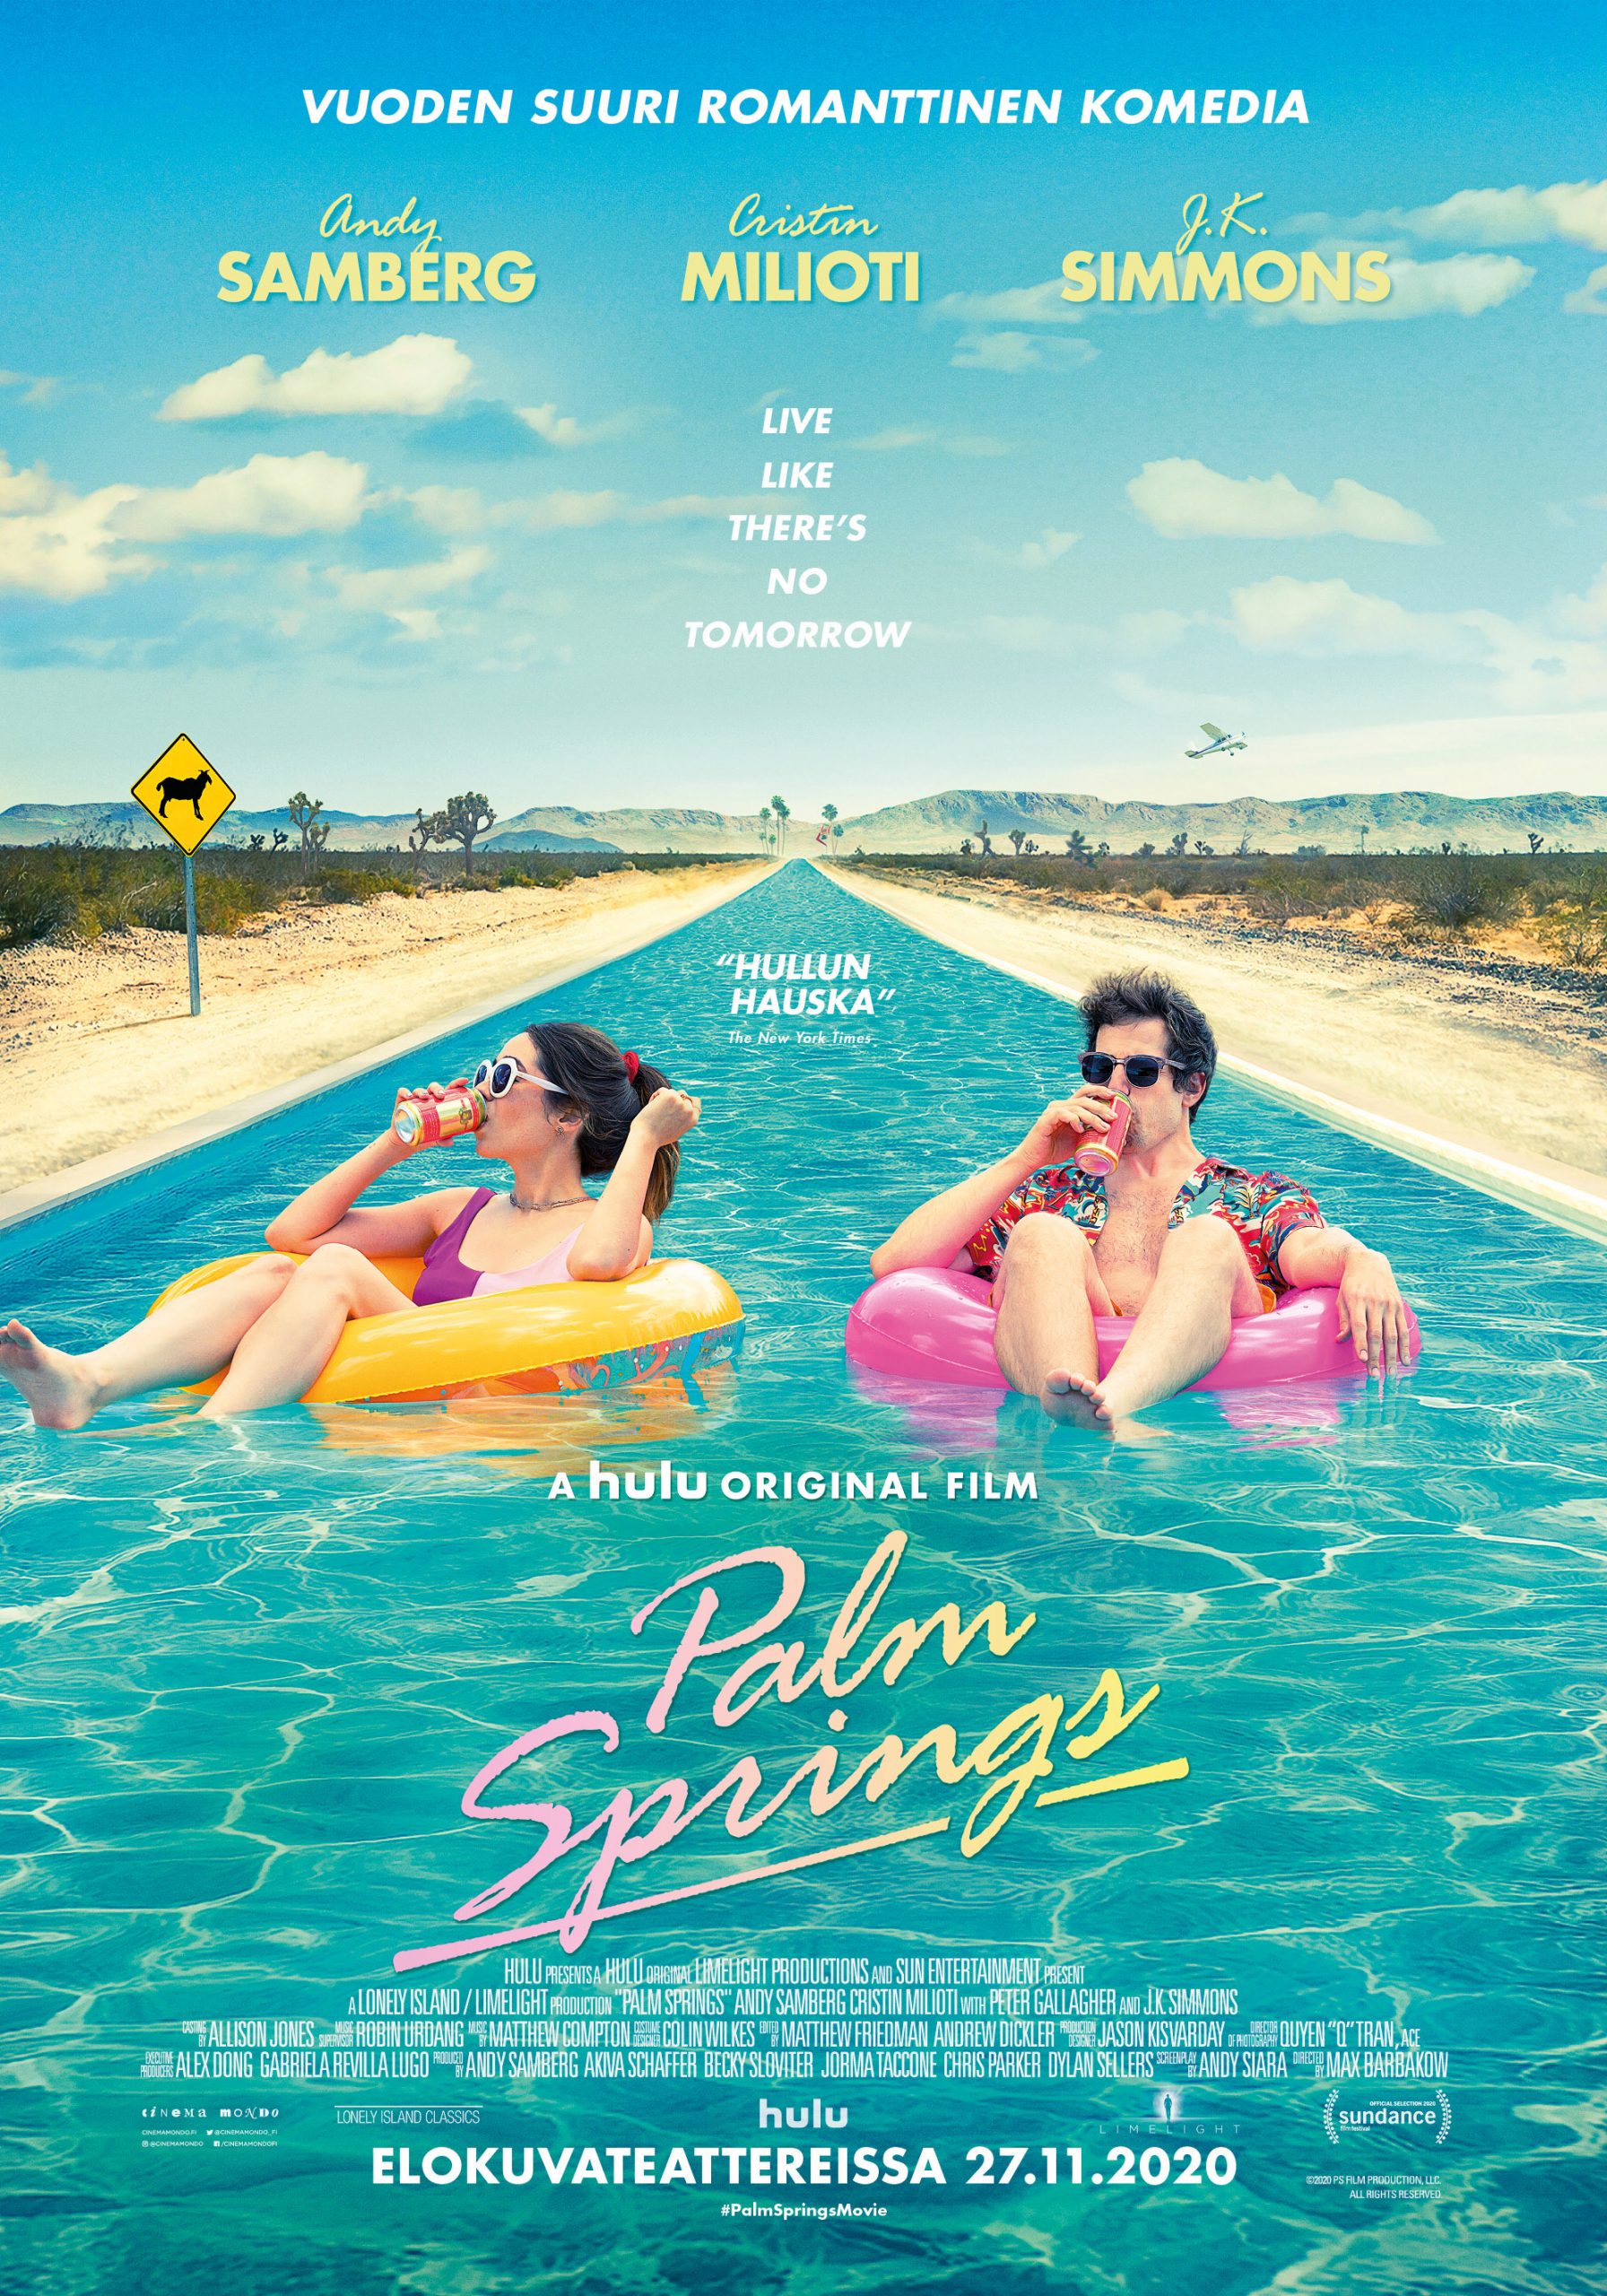 Joulun ja vuoden hauskin romanttinen komedia Palm Springs Kangasala-talon K-Kinossa joulukuussa 2020.